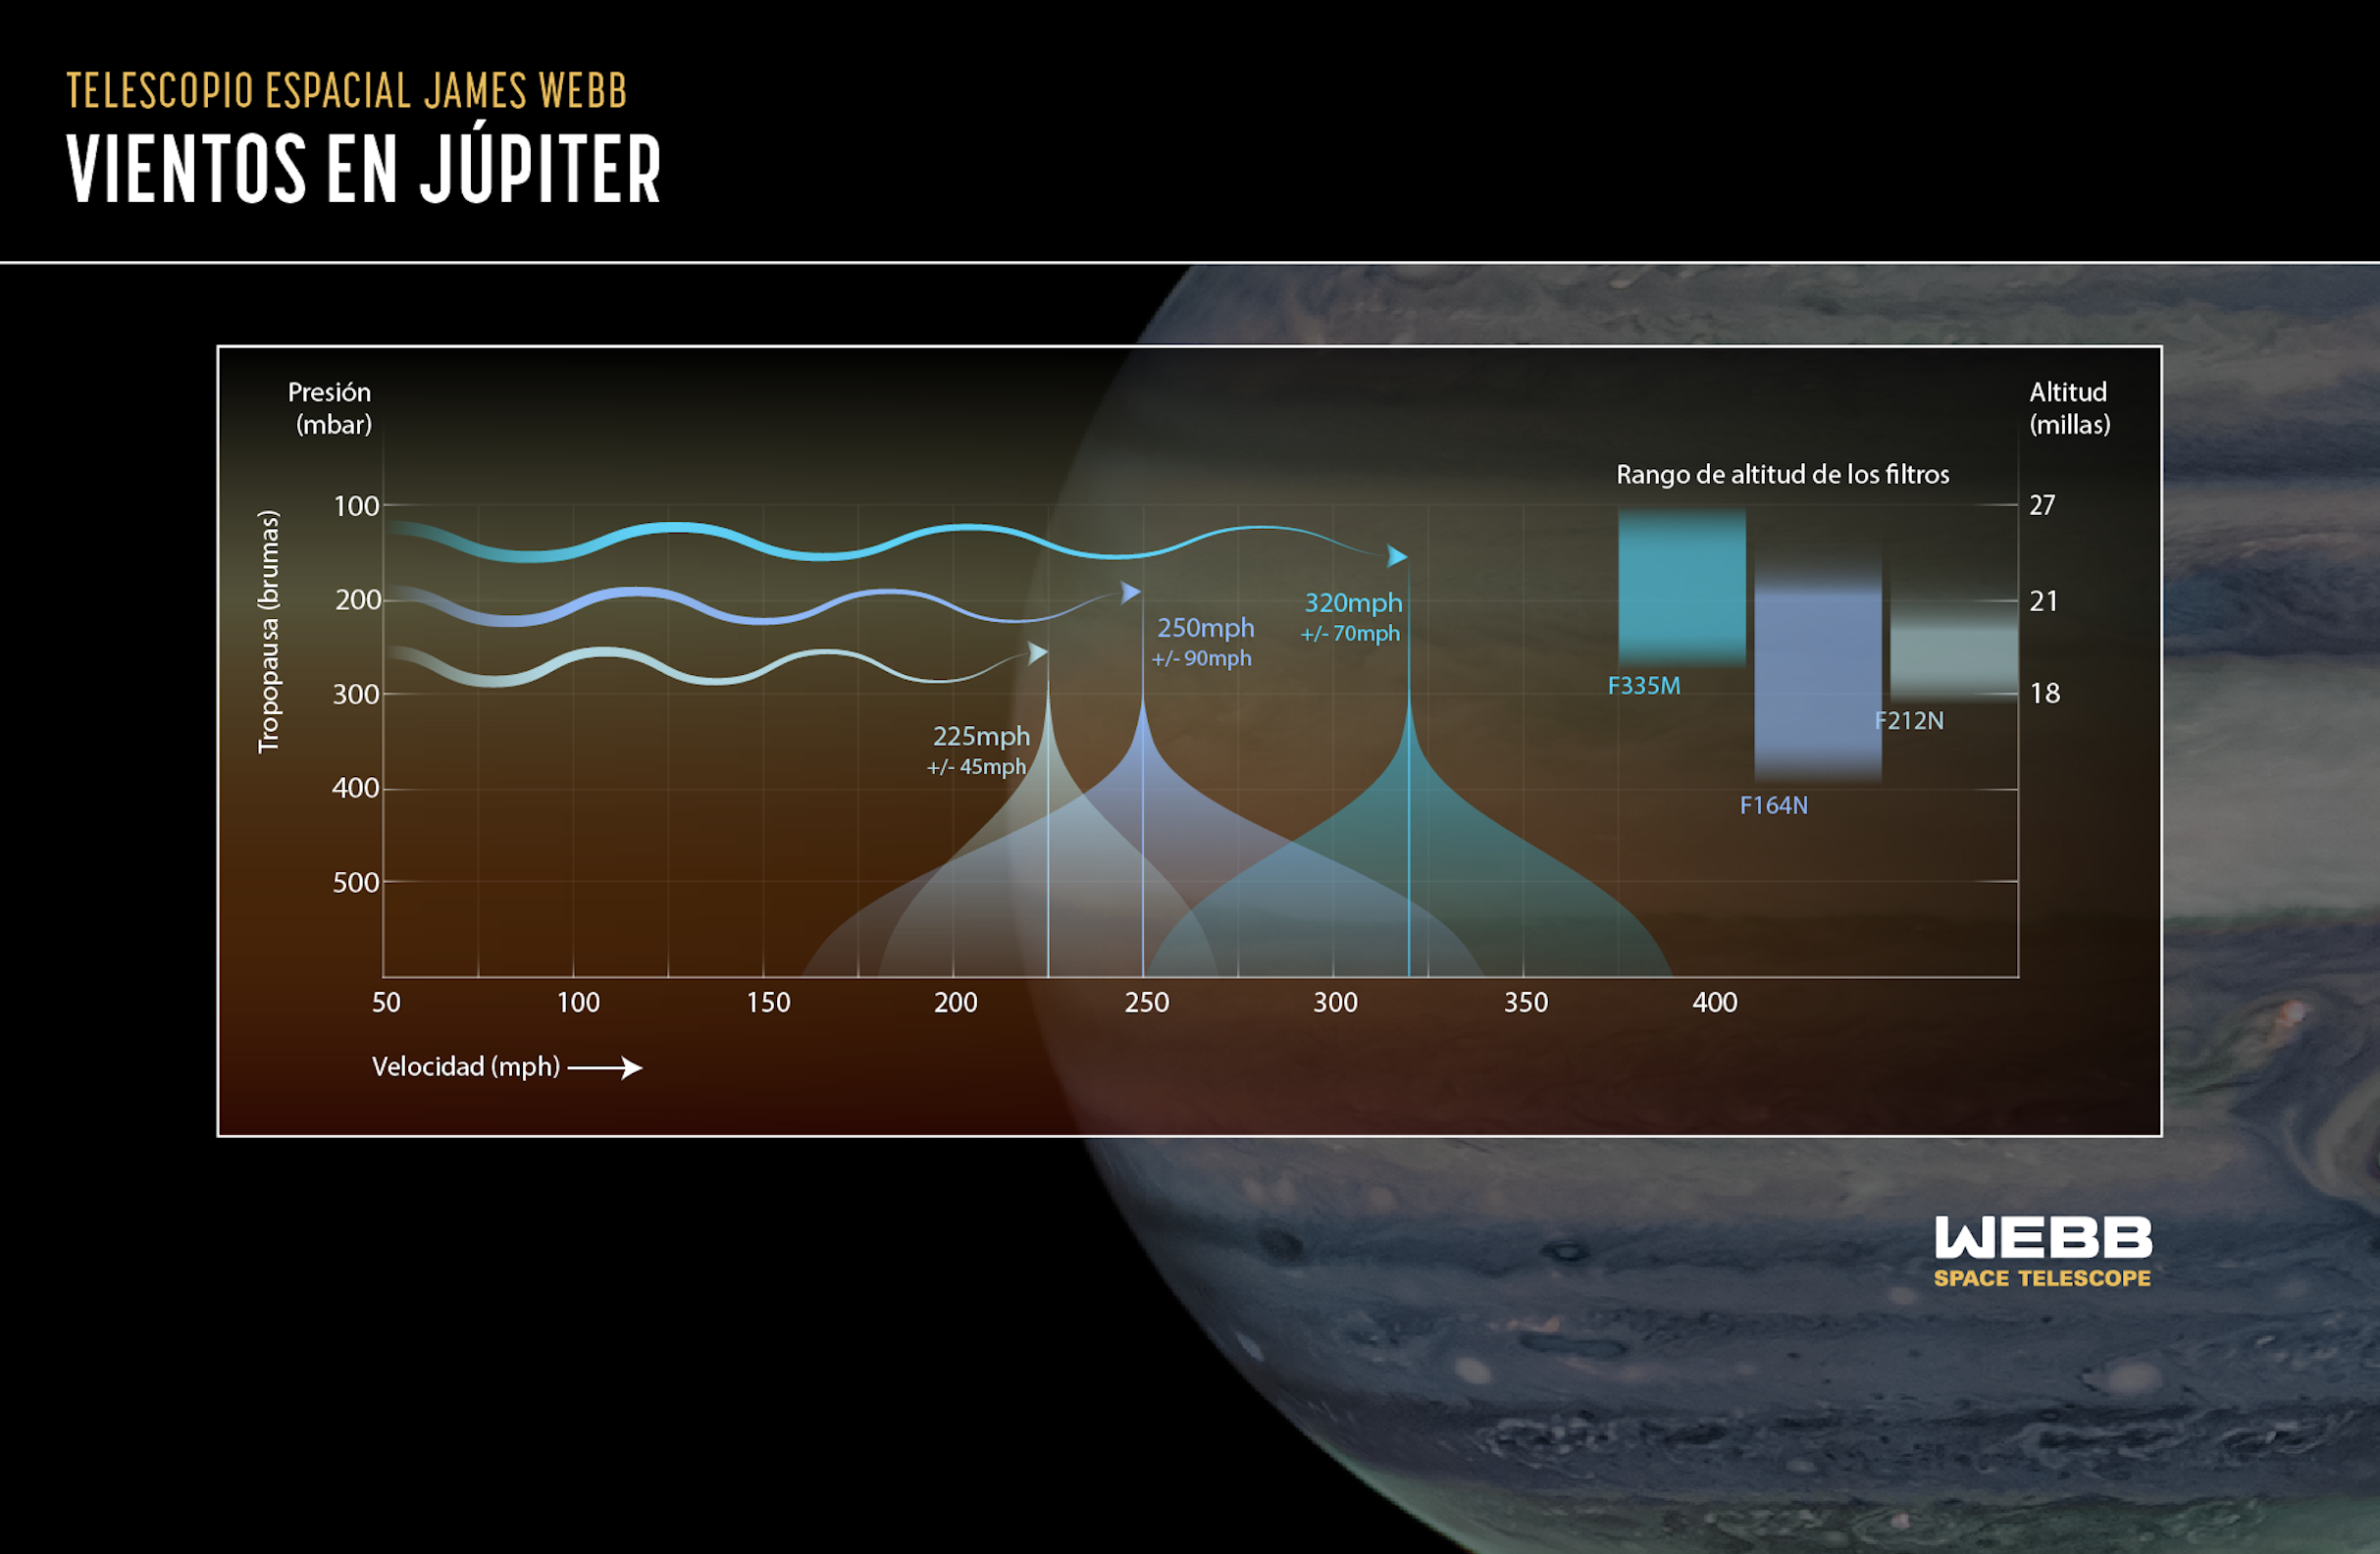 Júpiter tiene una atmósfera en capas, y esta ilustración muestra cómo el telescopio espacial James Webb de la NASA es extraordinariamente capaz de recopilar información de capas más altas de la altitud que antes.